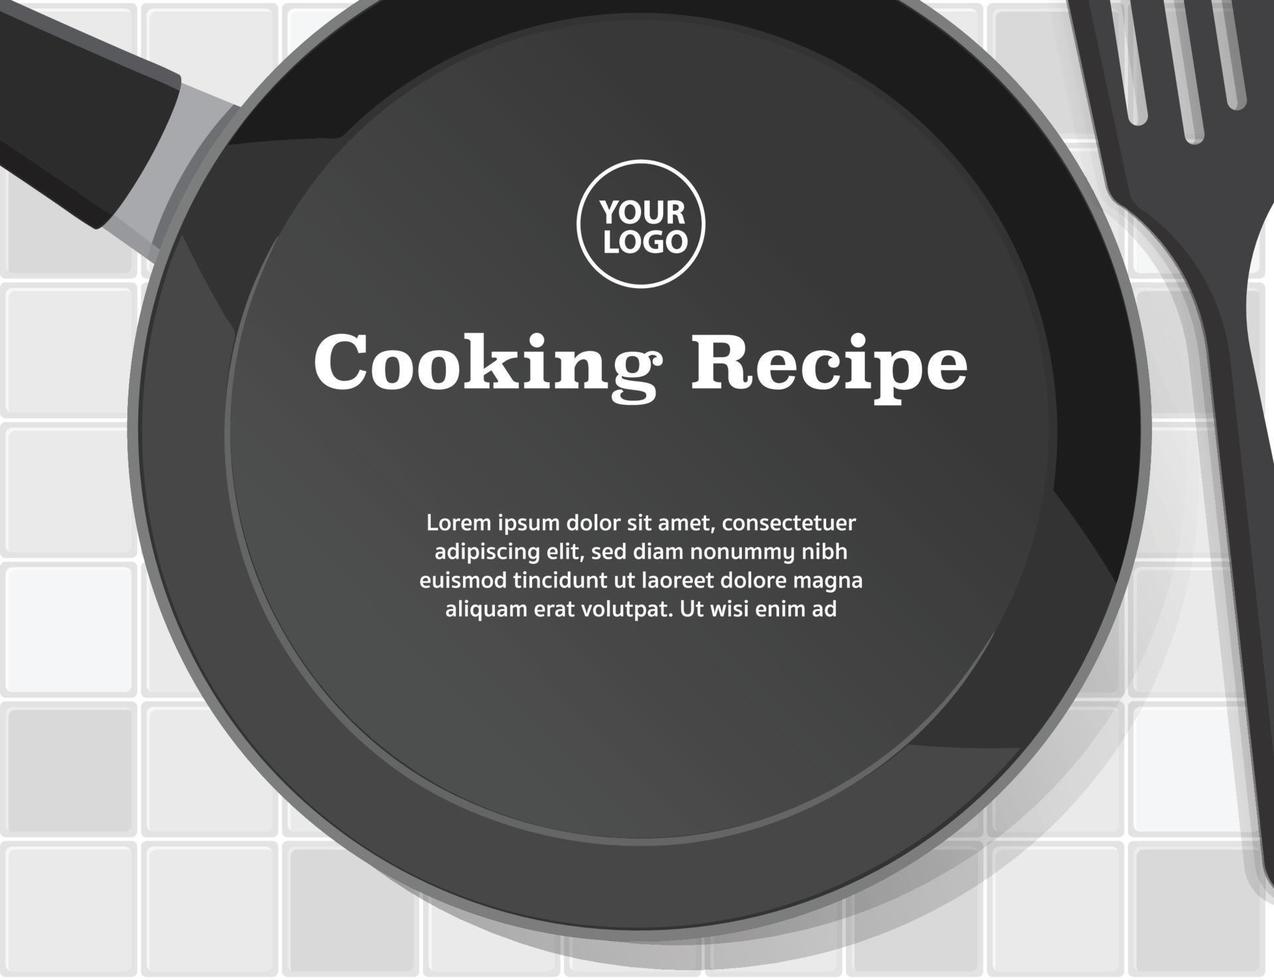 Fondo de utensilios de cocina de receta de cocina, cartel de cocina, ilustración vectorial vector